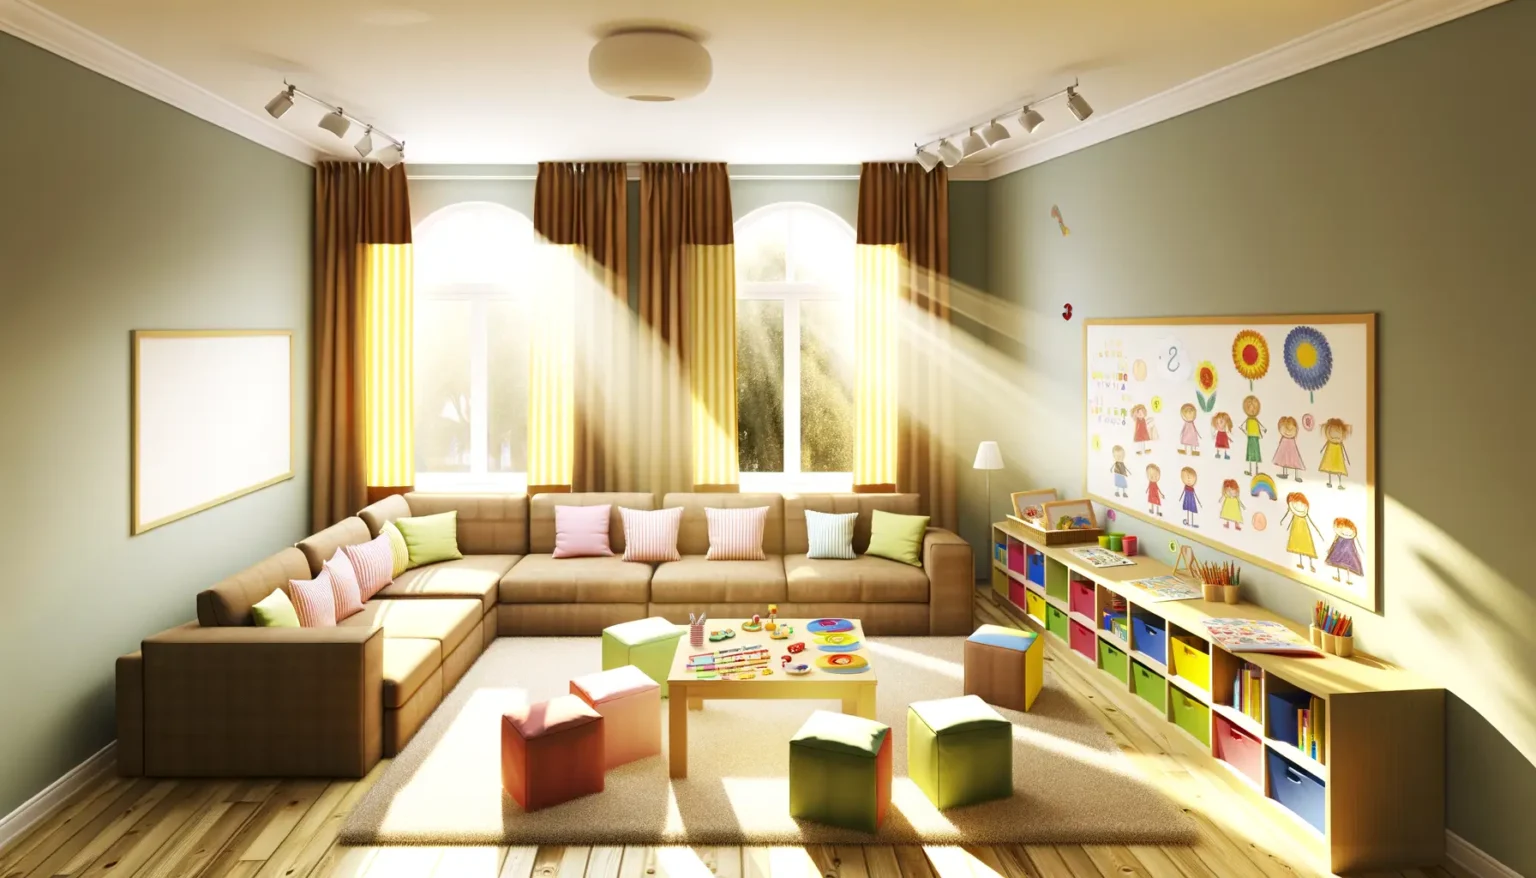 Sonnenlicht flutet durch die Fenster und beleuchtet ein kinderfreundlich gestaltetes Wohnzimmer mit einer großen, gemütlichen, braunen Sofalandschaft mit bunten Kissen. In der Ecke des Raums befindet sich ein Spielbereich mit einem niedrigen Tisch, umgeben von bunten Sitzwürfeln, darauf Spielzeug und Kinderbücher. An der Wand sind kindgerechte Dekorationen, darunter ein großes Poster mit gezeichneten Kindermotiven und eine niedrige Bücherregal-Einheit mit farbigen Fächern, gefüllt mit Spielzeug und Büchern.